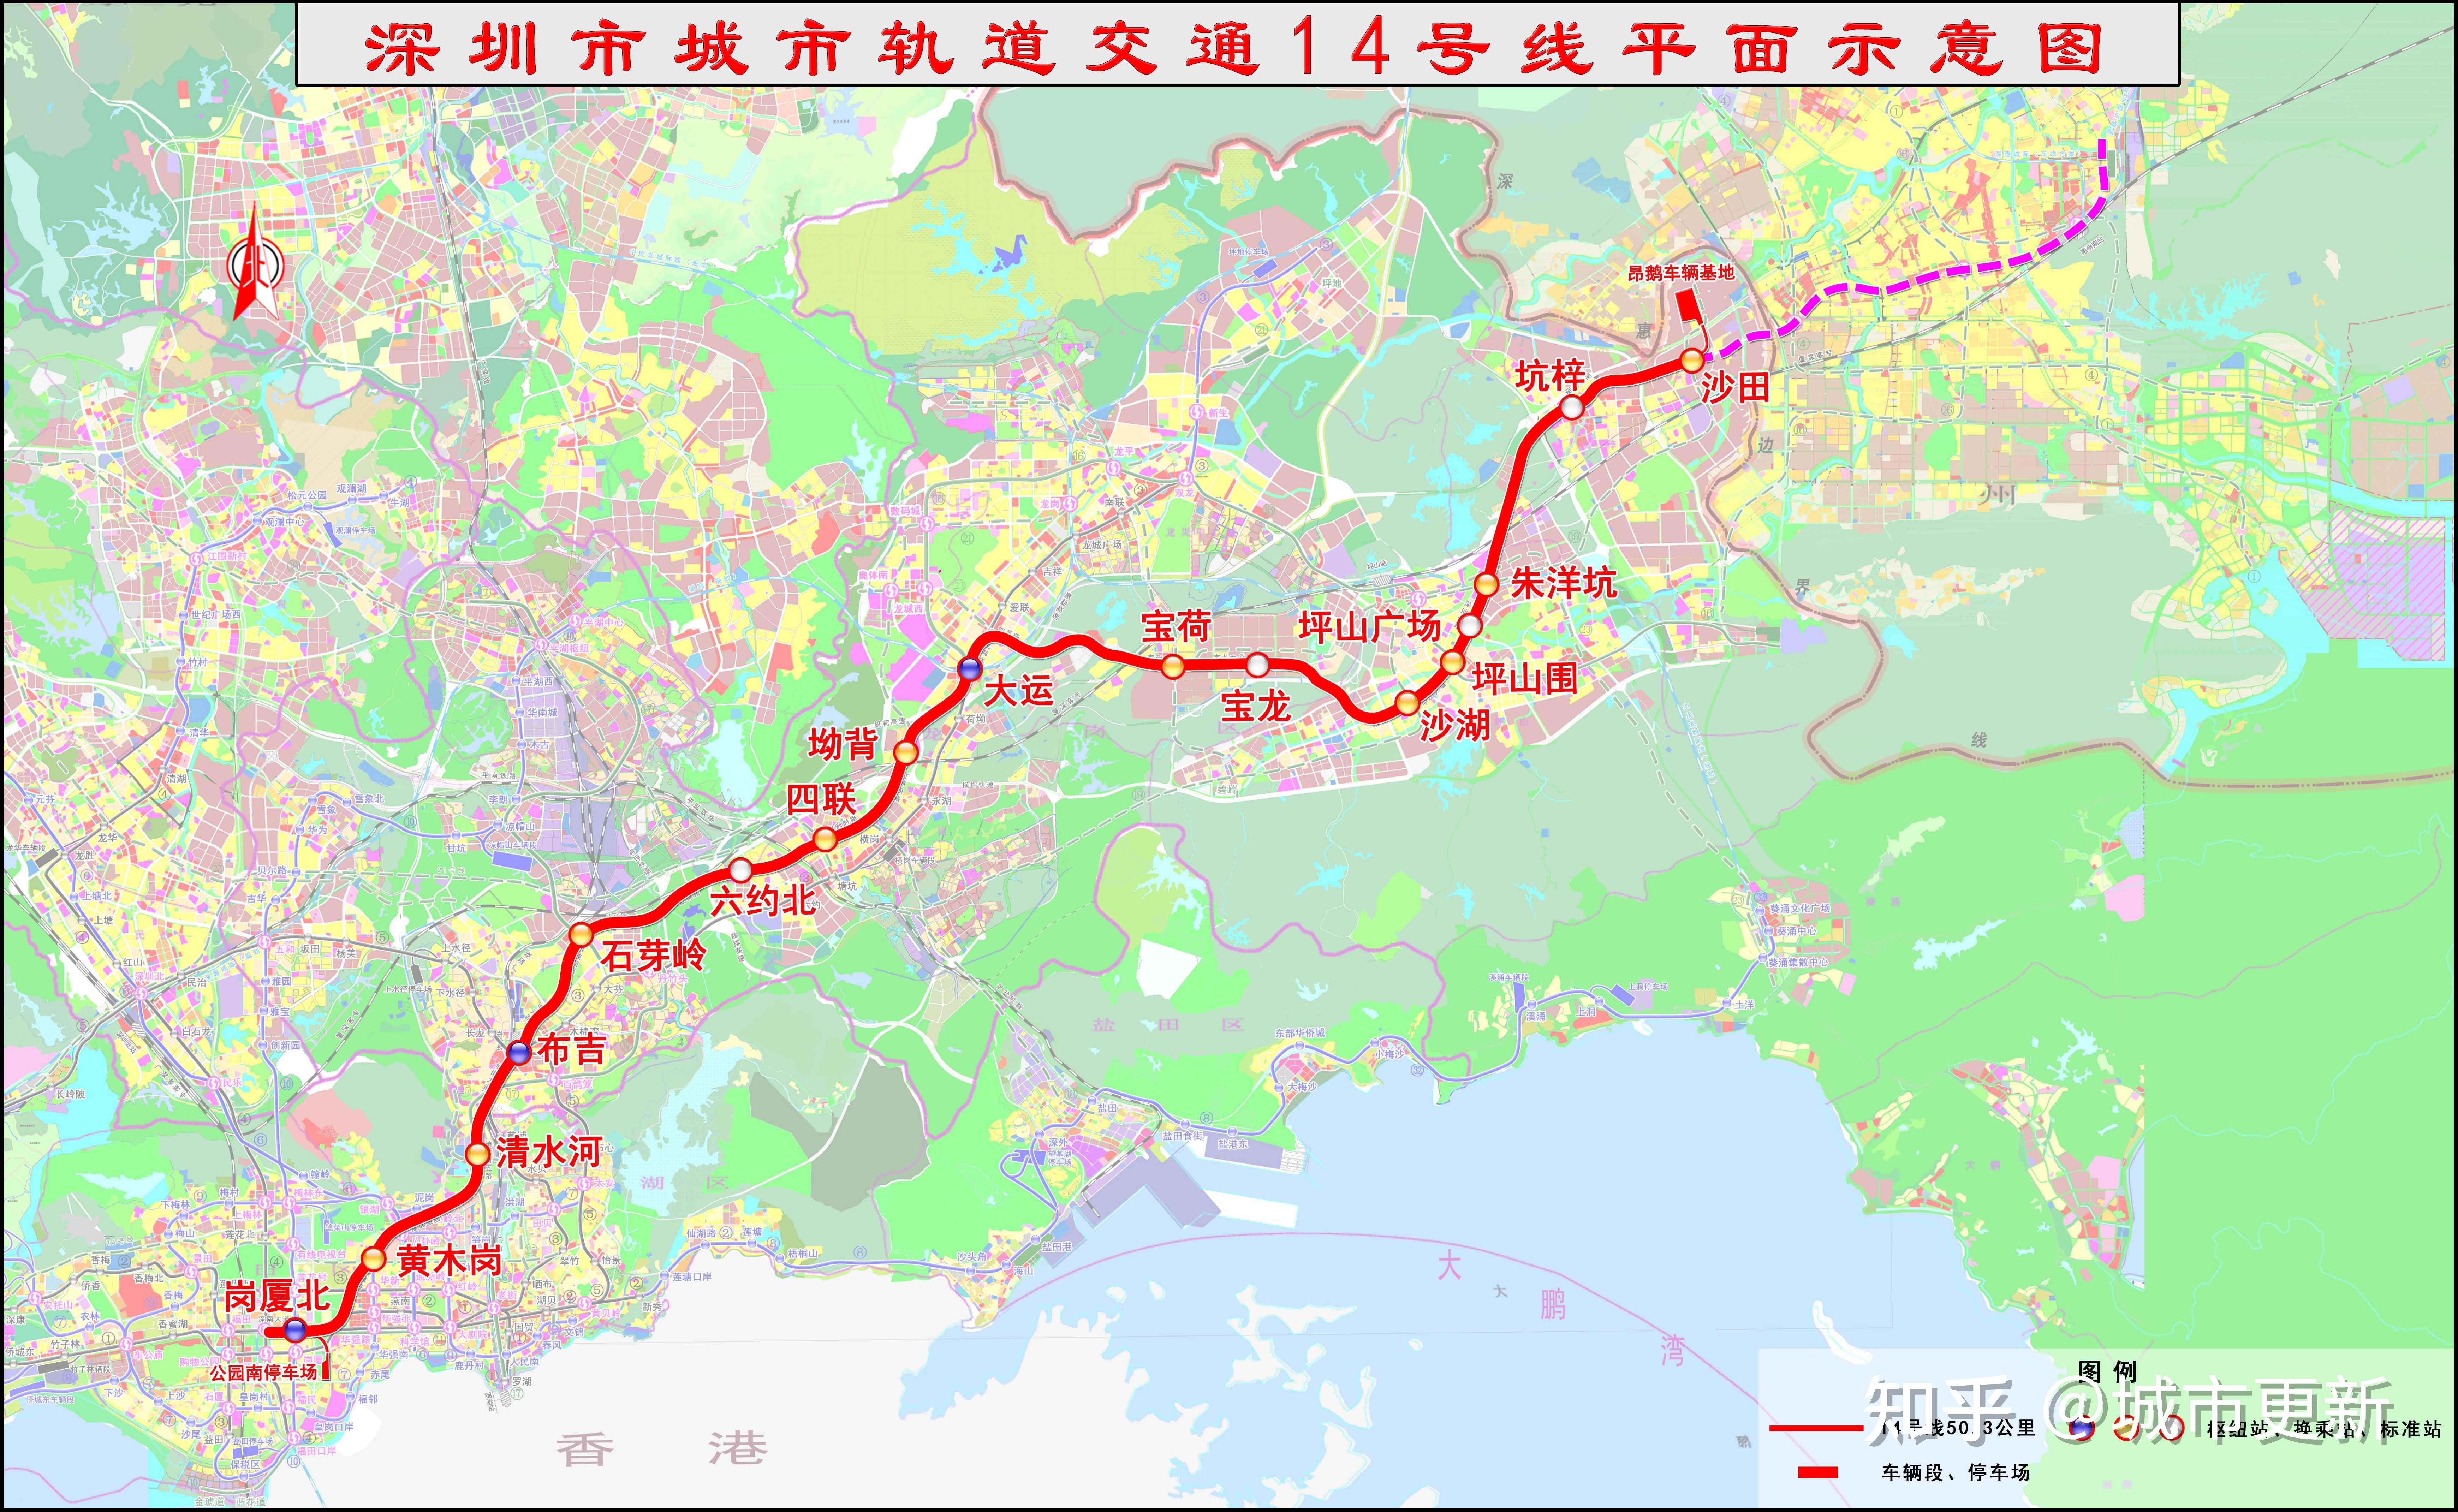 广州地铁14号线规划图图片